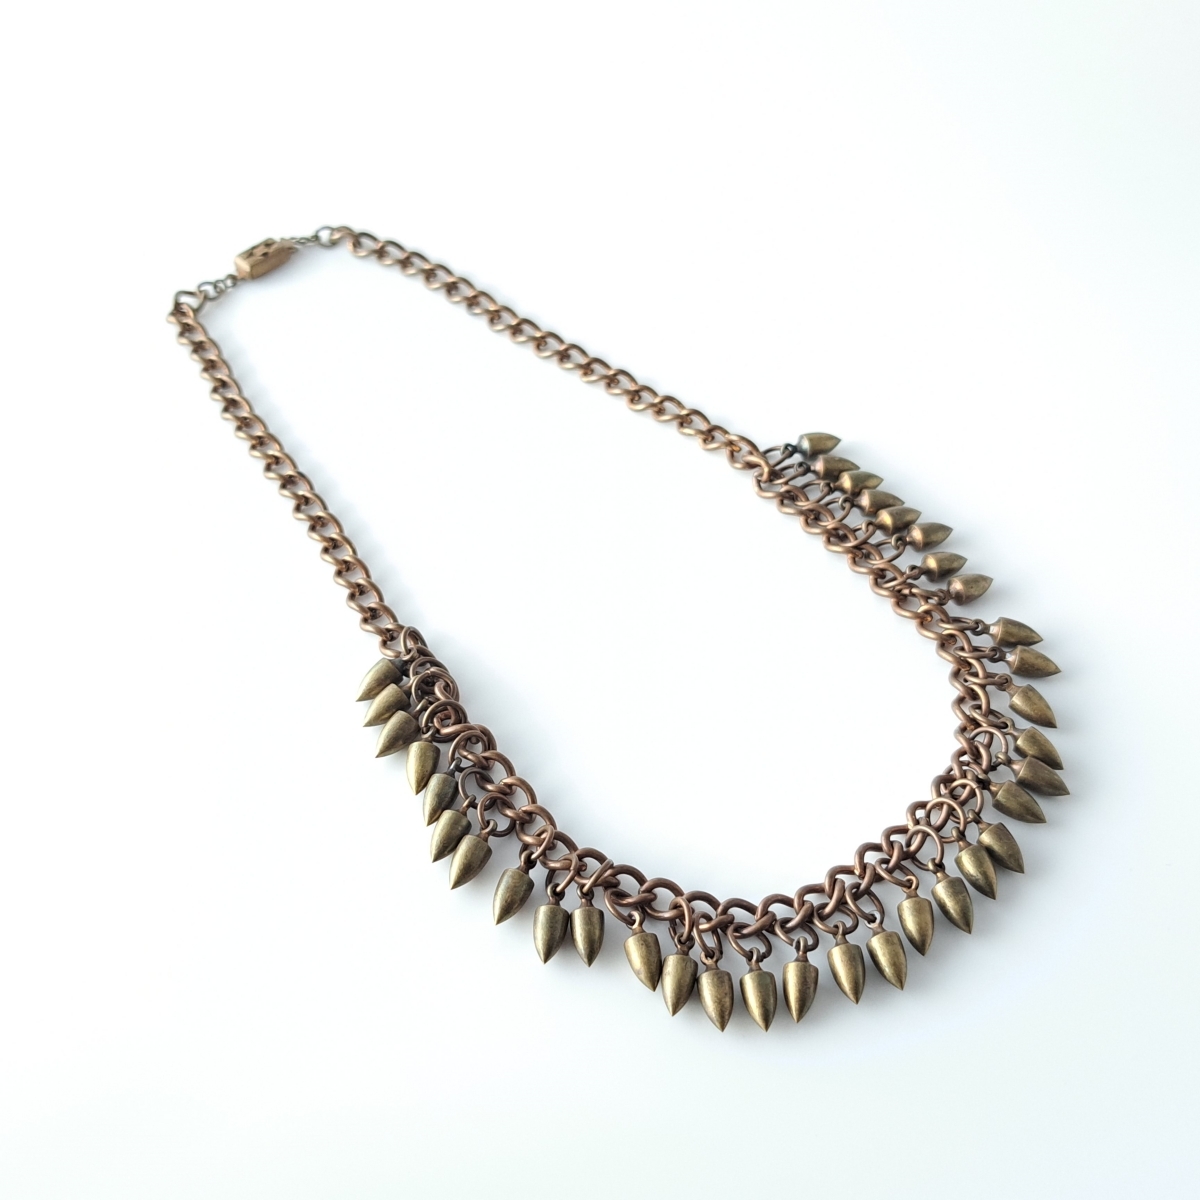 その他 Vintage 1940's Studded Necklace Bronze Color Indian Jewelry